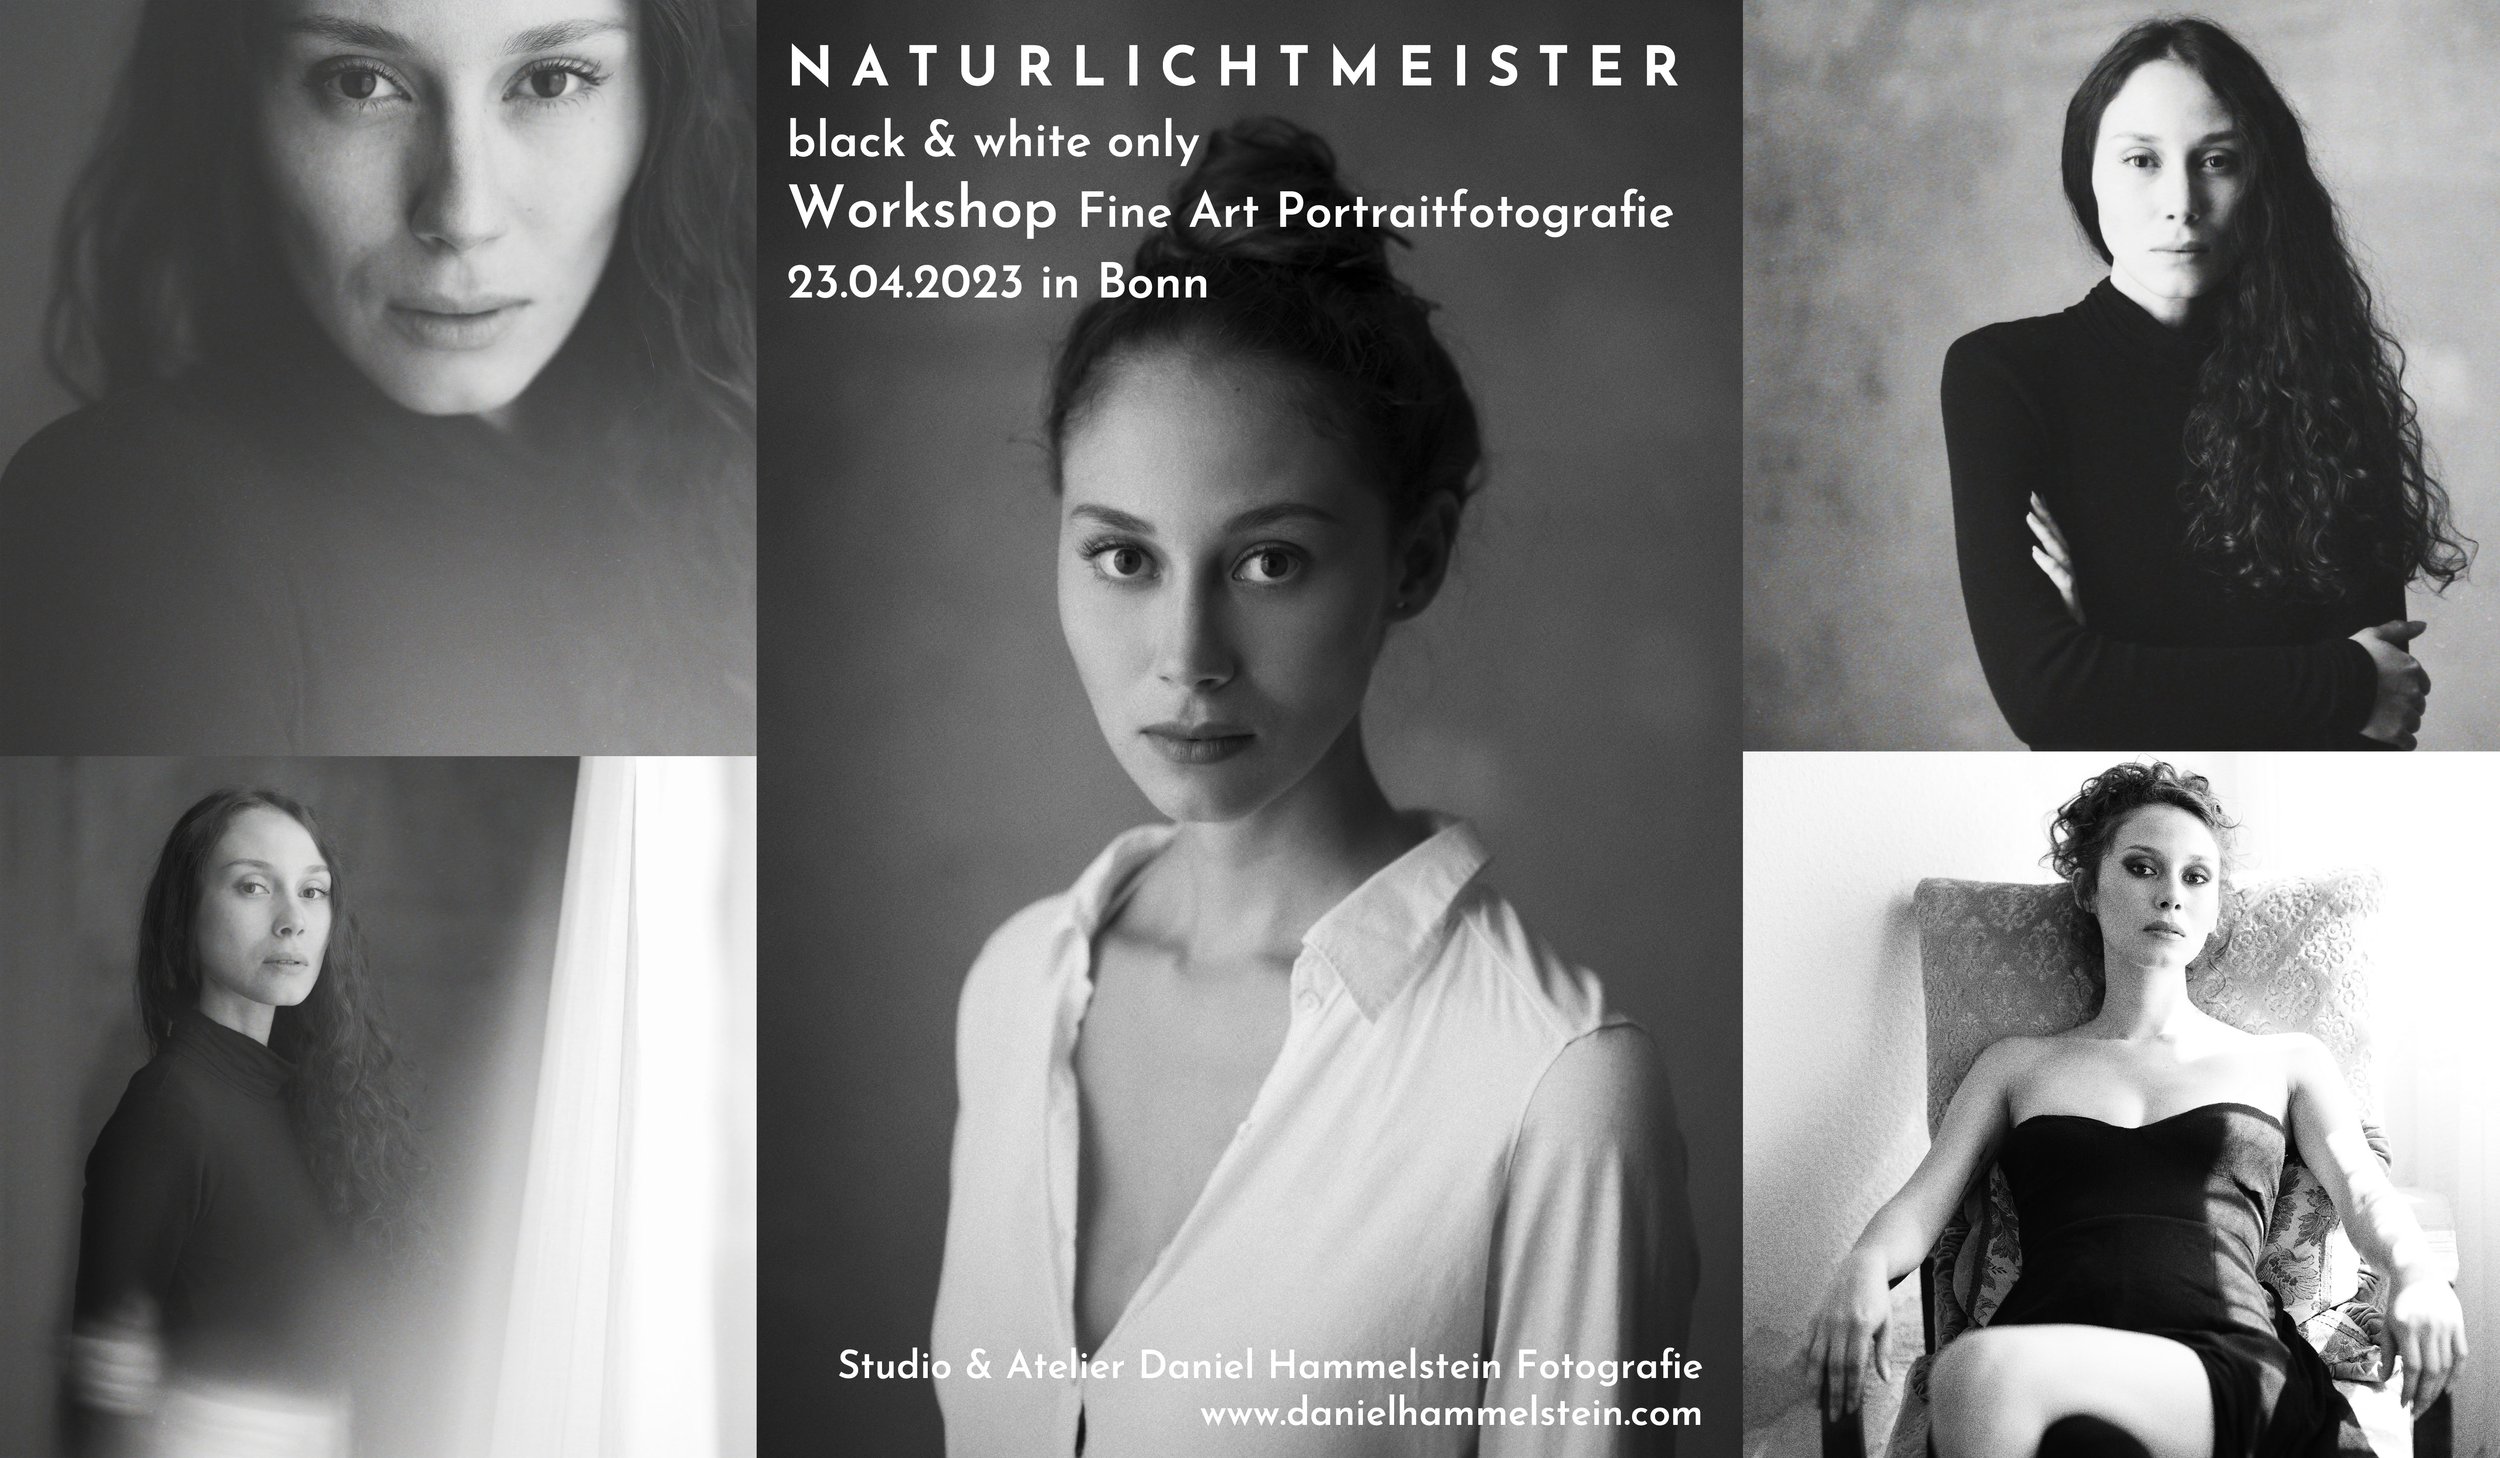 Naturlichtmeister Workshop April Frühjahr 2023 Daniel Hammelstein Portrait Workshop Portraitfotografie Schwarzweissfotografie Fotoworkshop Fotokurs Bonn Köln Düsseldorf NRW.jpg